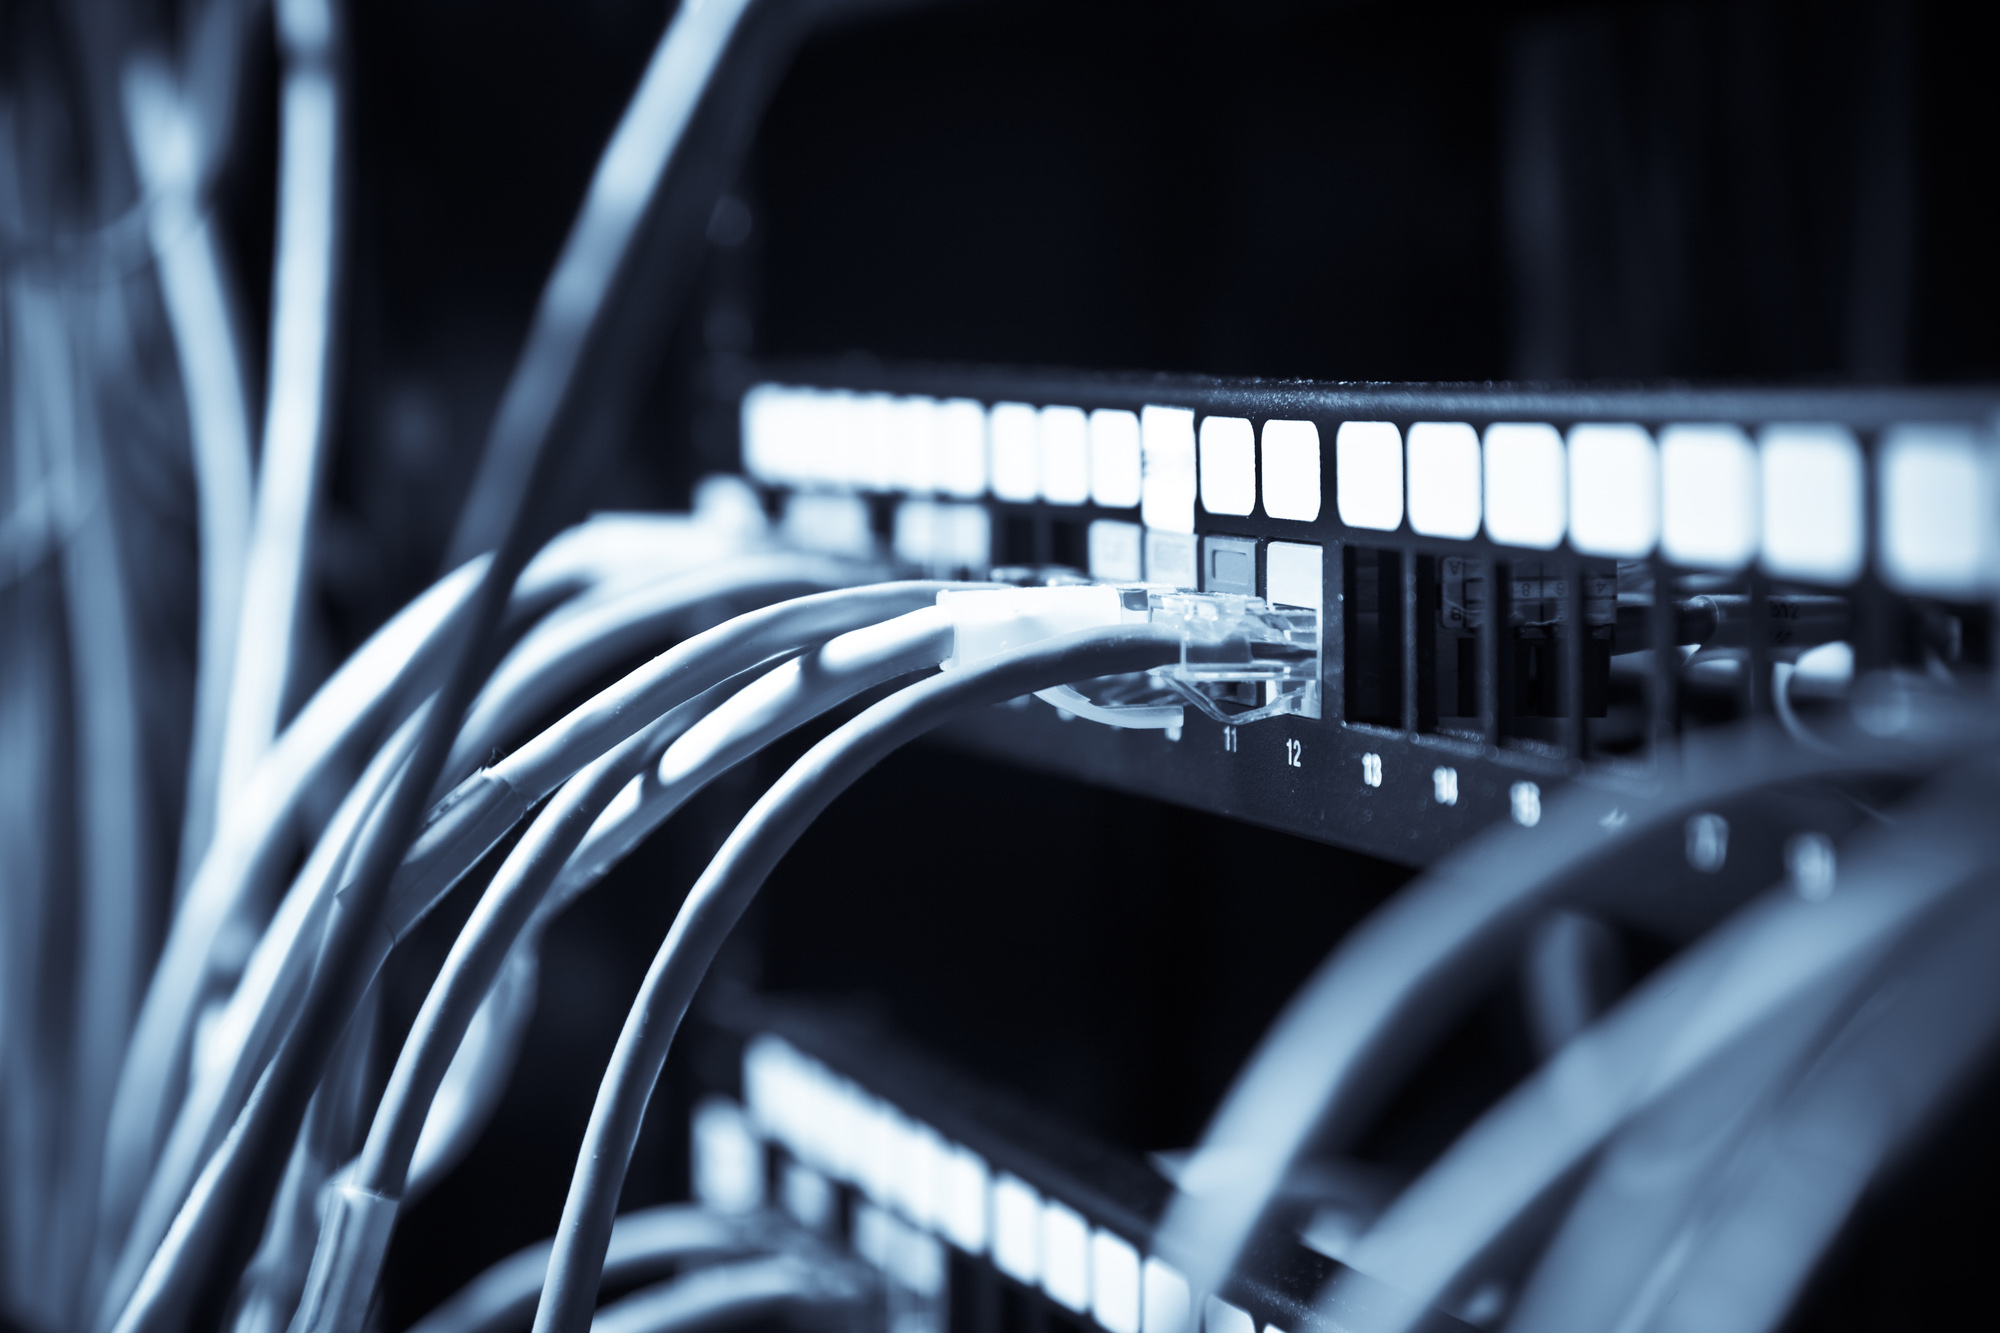 Verificar se o cabo Ethernet utilizado é de categoria adequada para velocidades desejadas
Desligar ou afastar dispositivos que possam causar interferência na rede